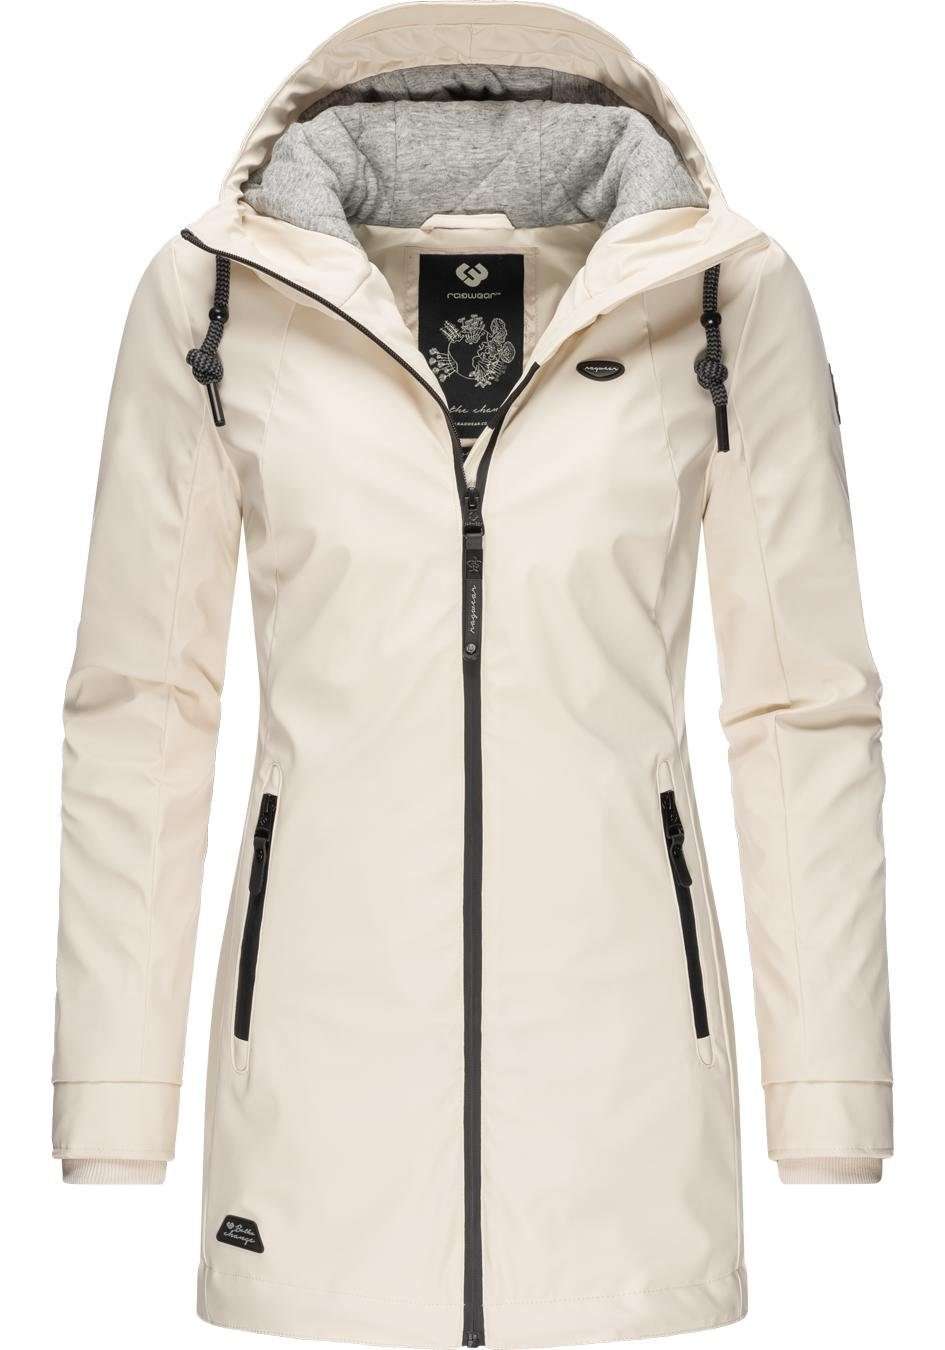 Зимняя куртка Zuzka Rainy II Intl. стильная дождевая парка на зиму